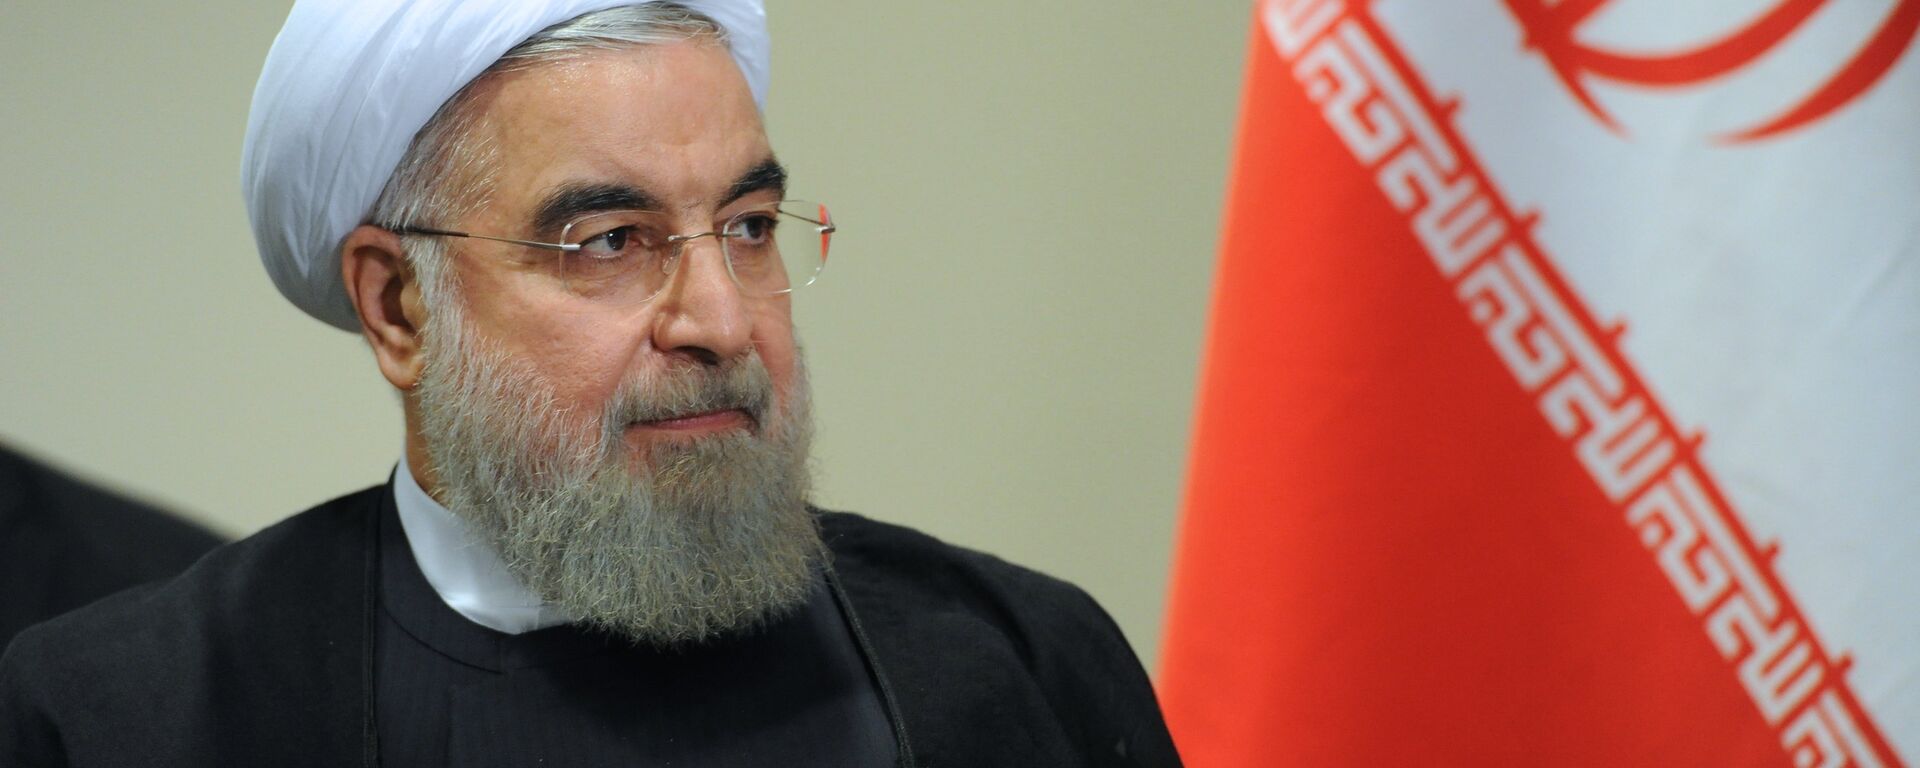 Президент Исламской Республики Иран Хасан Рухани - Sputnik Ўзбекистон, 1920, 18.09.2019